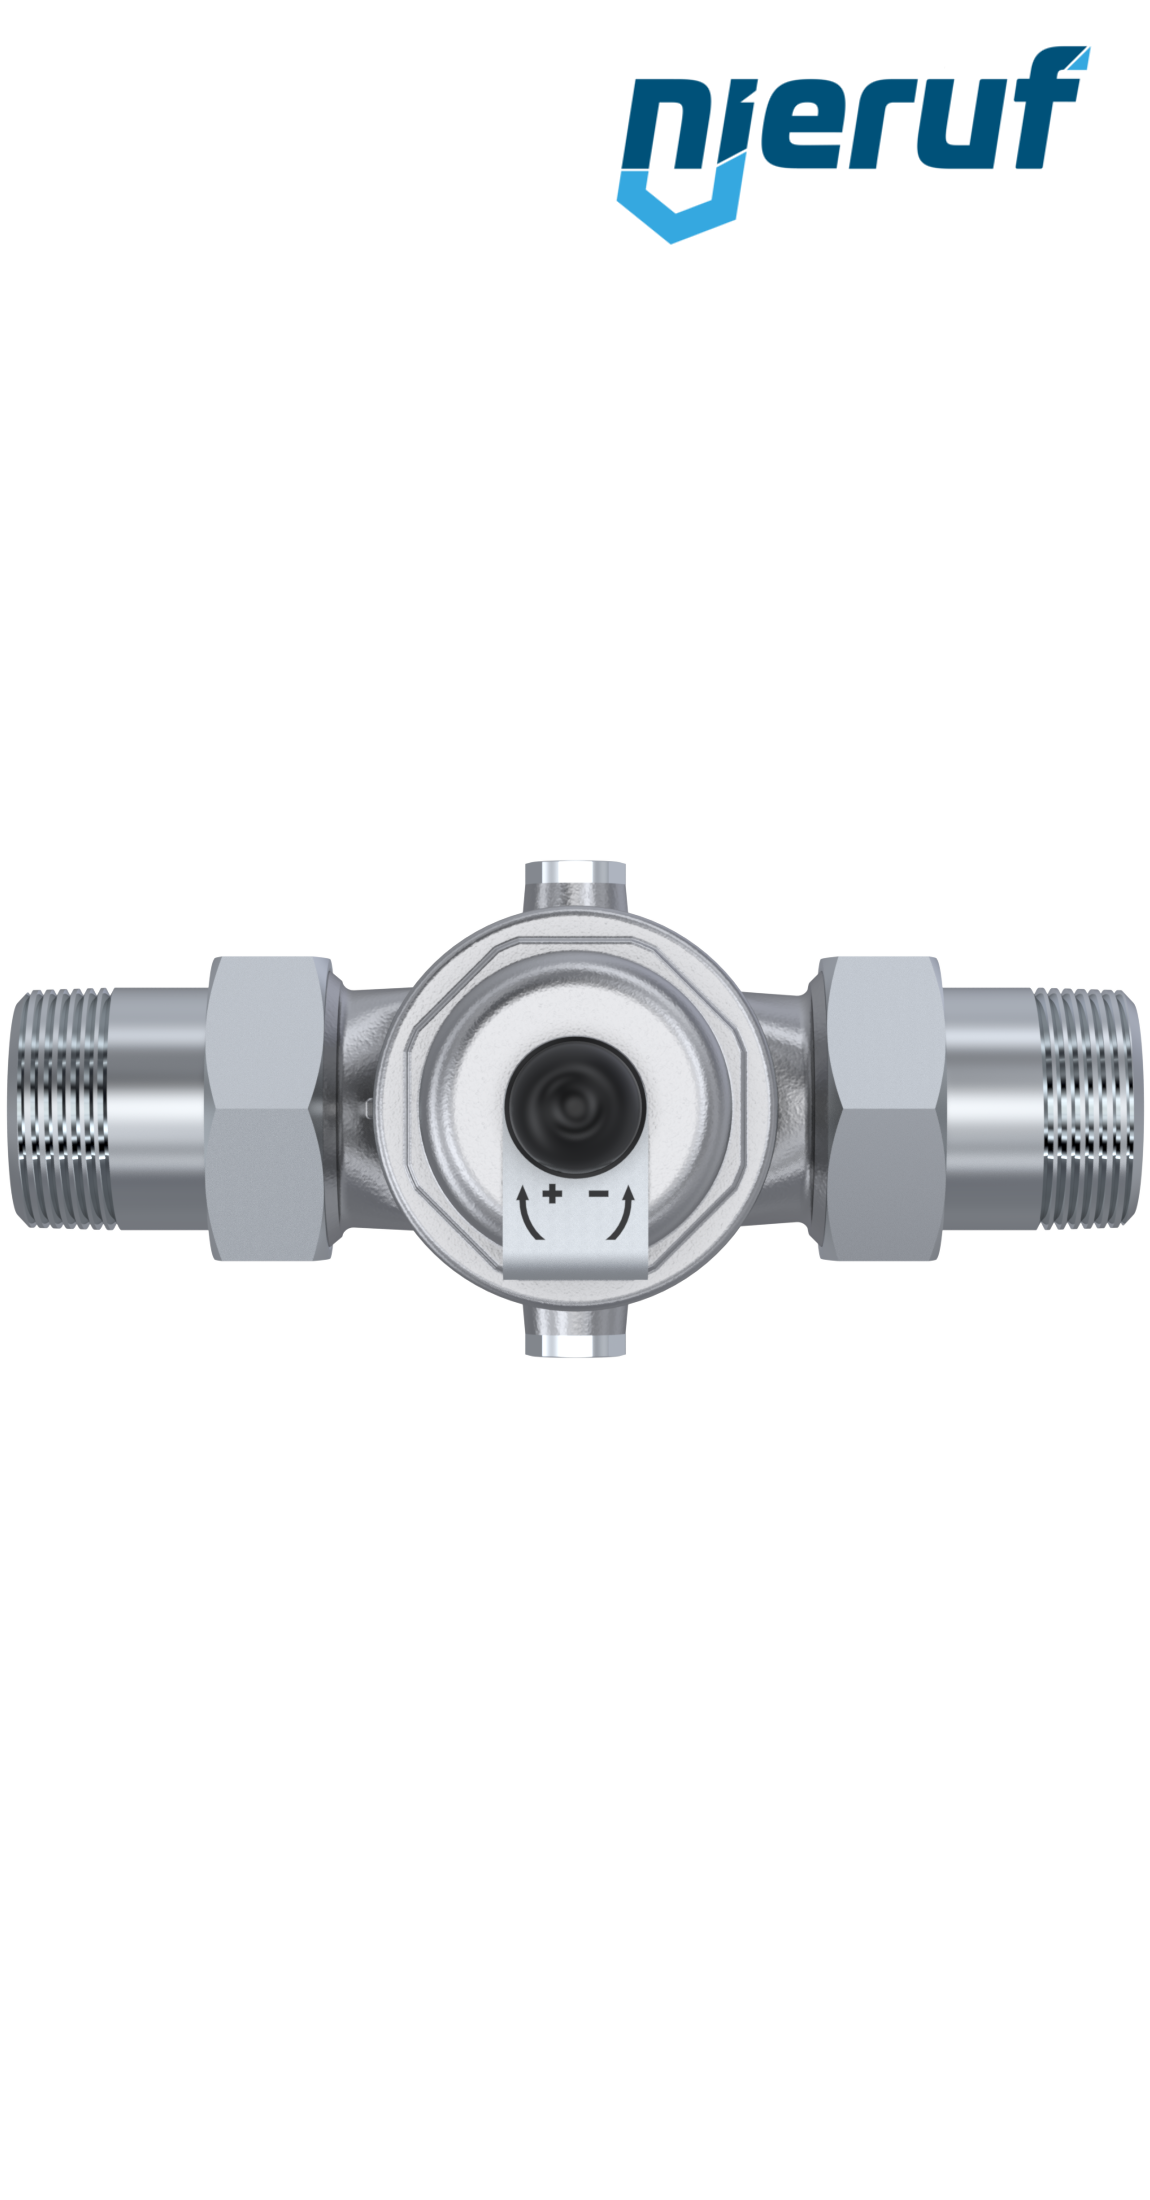 pressure reducing valve 1" inch male thread DM04 stainless steel FKM 5.0 - 15.0 bar